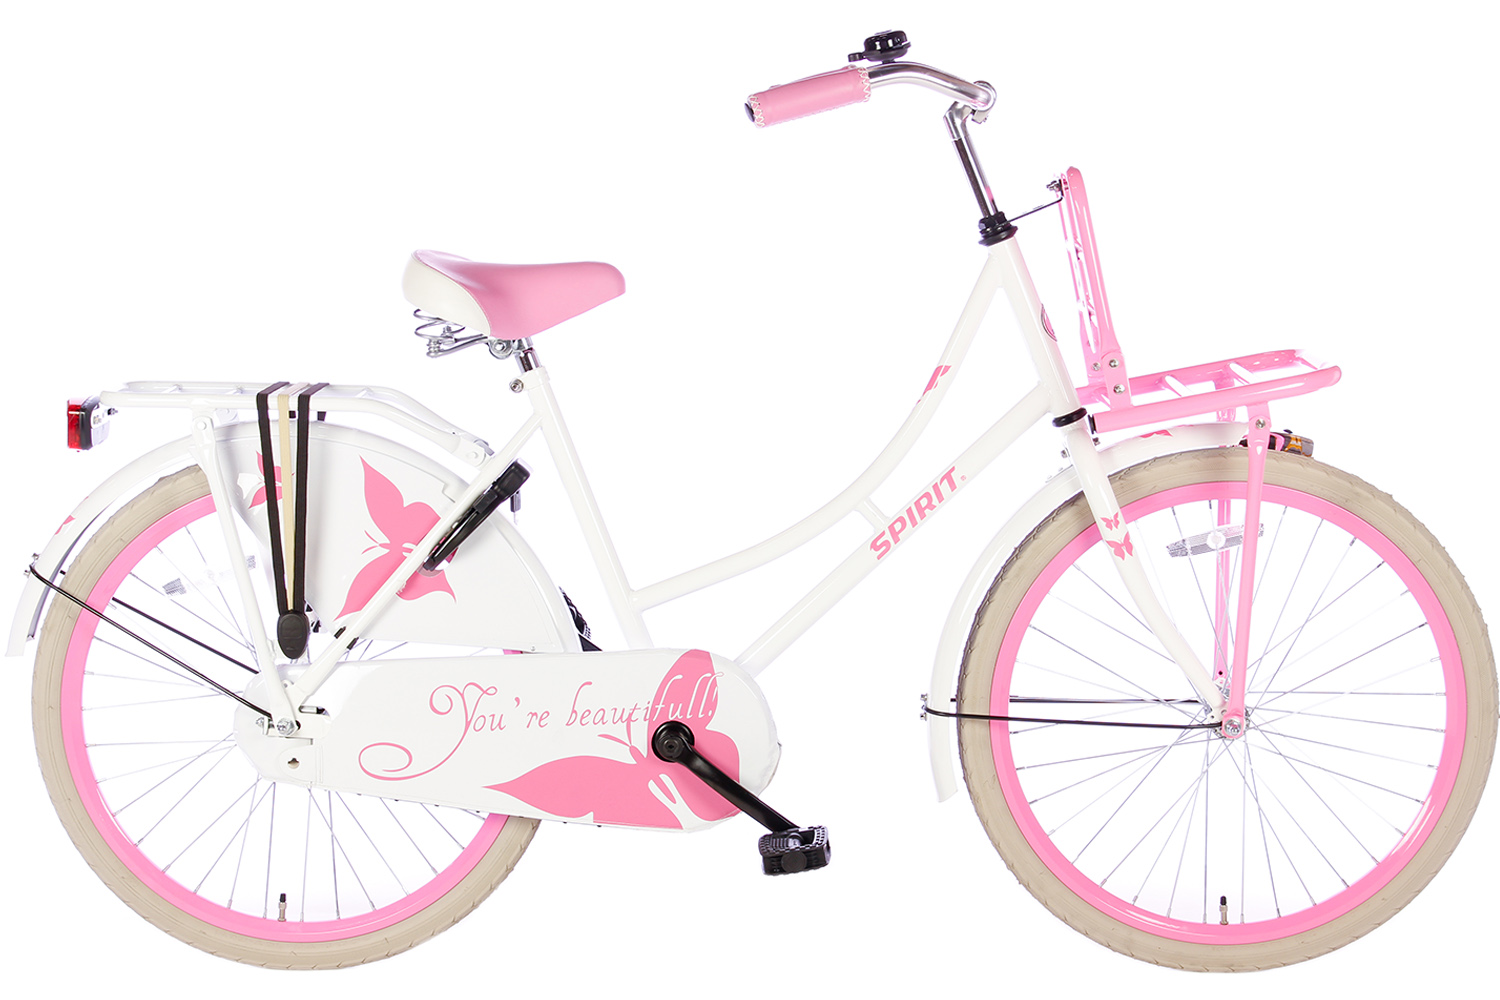 toernooi herhaling Zwakheid Spirit Omafiets Wit-Roze 24 inch(wordt 100%rijklaar geleverd) - Bike 2 Bike